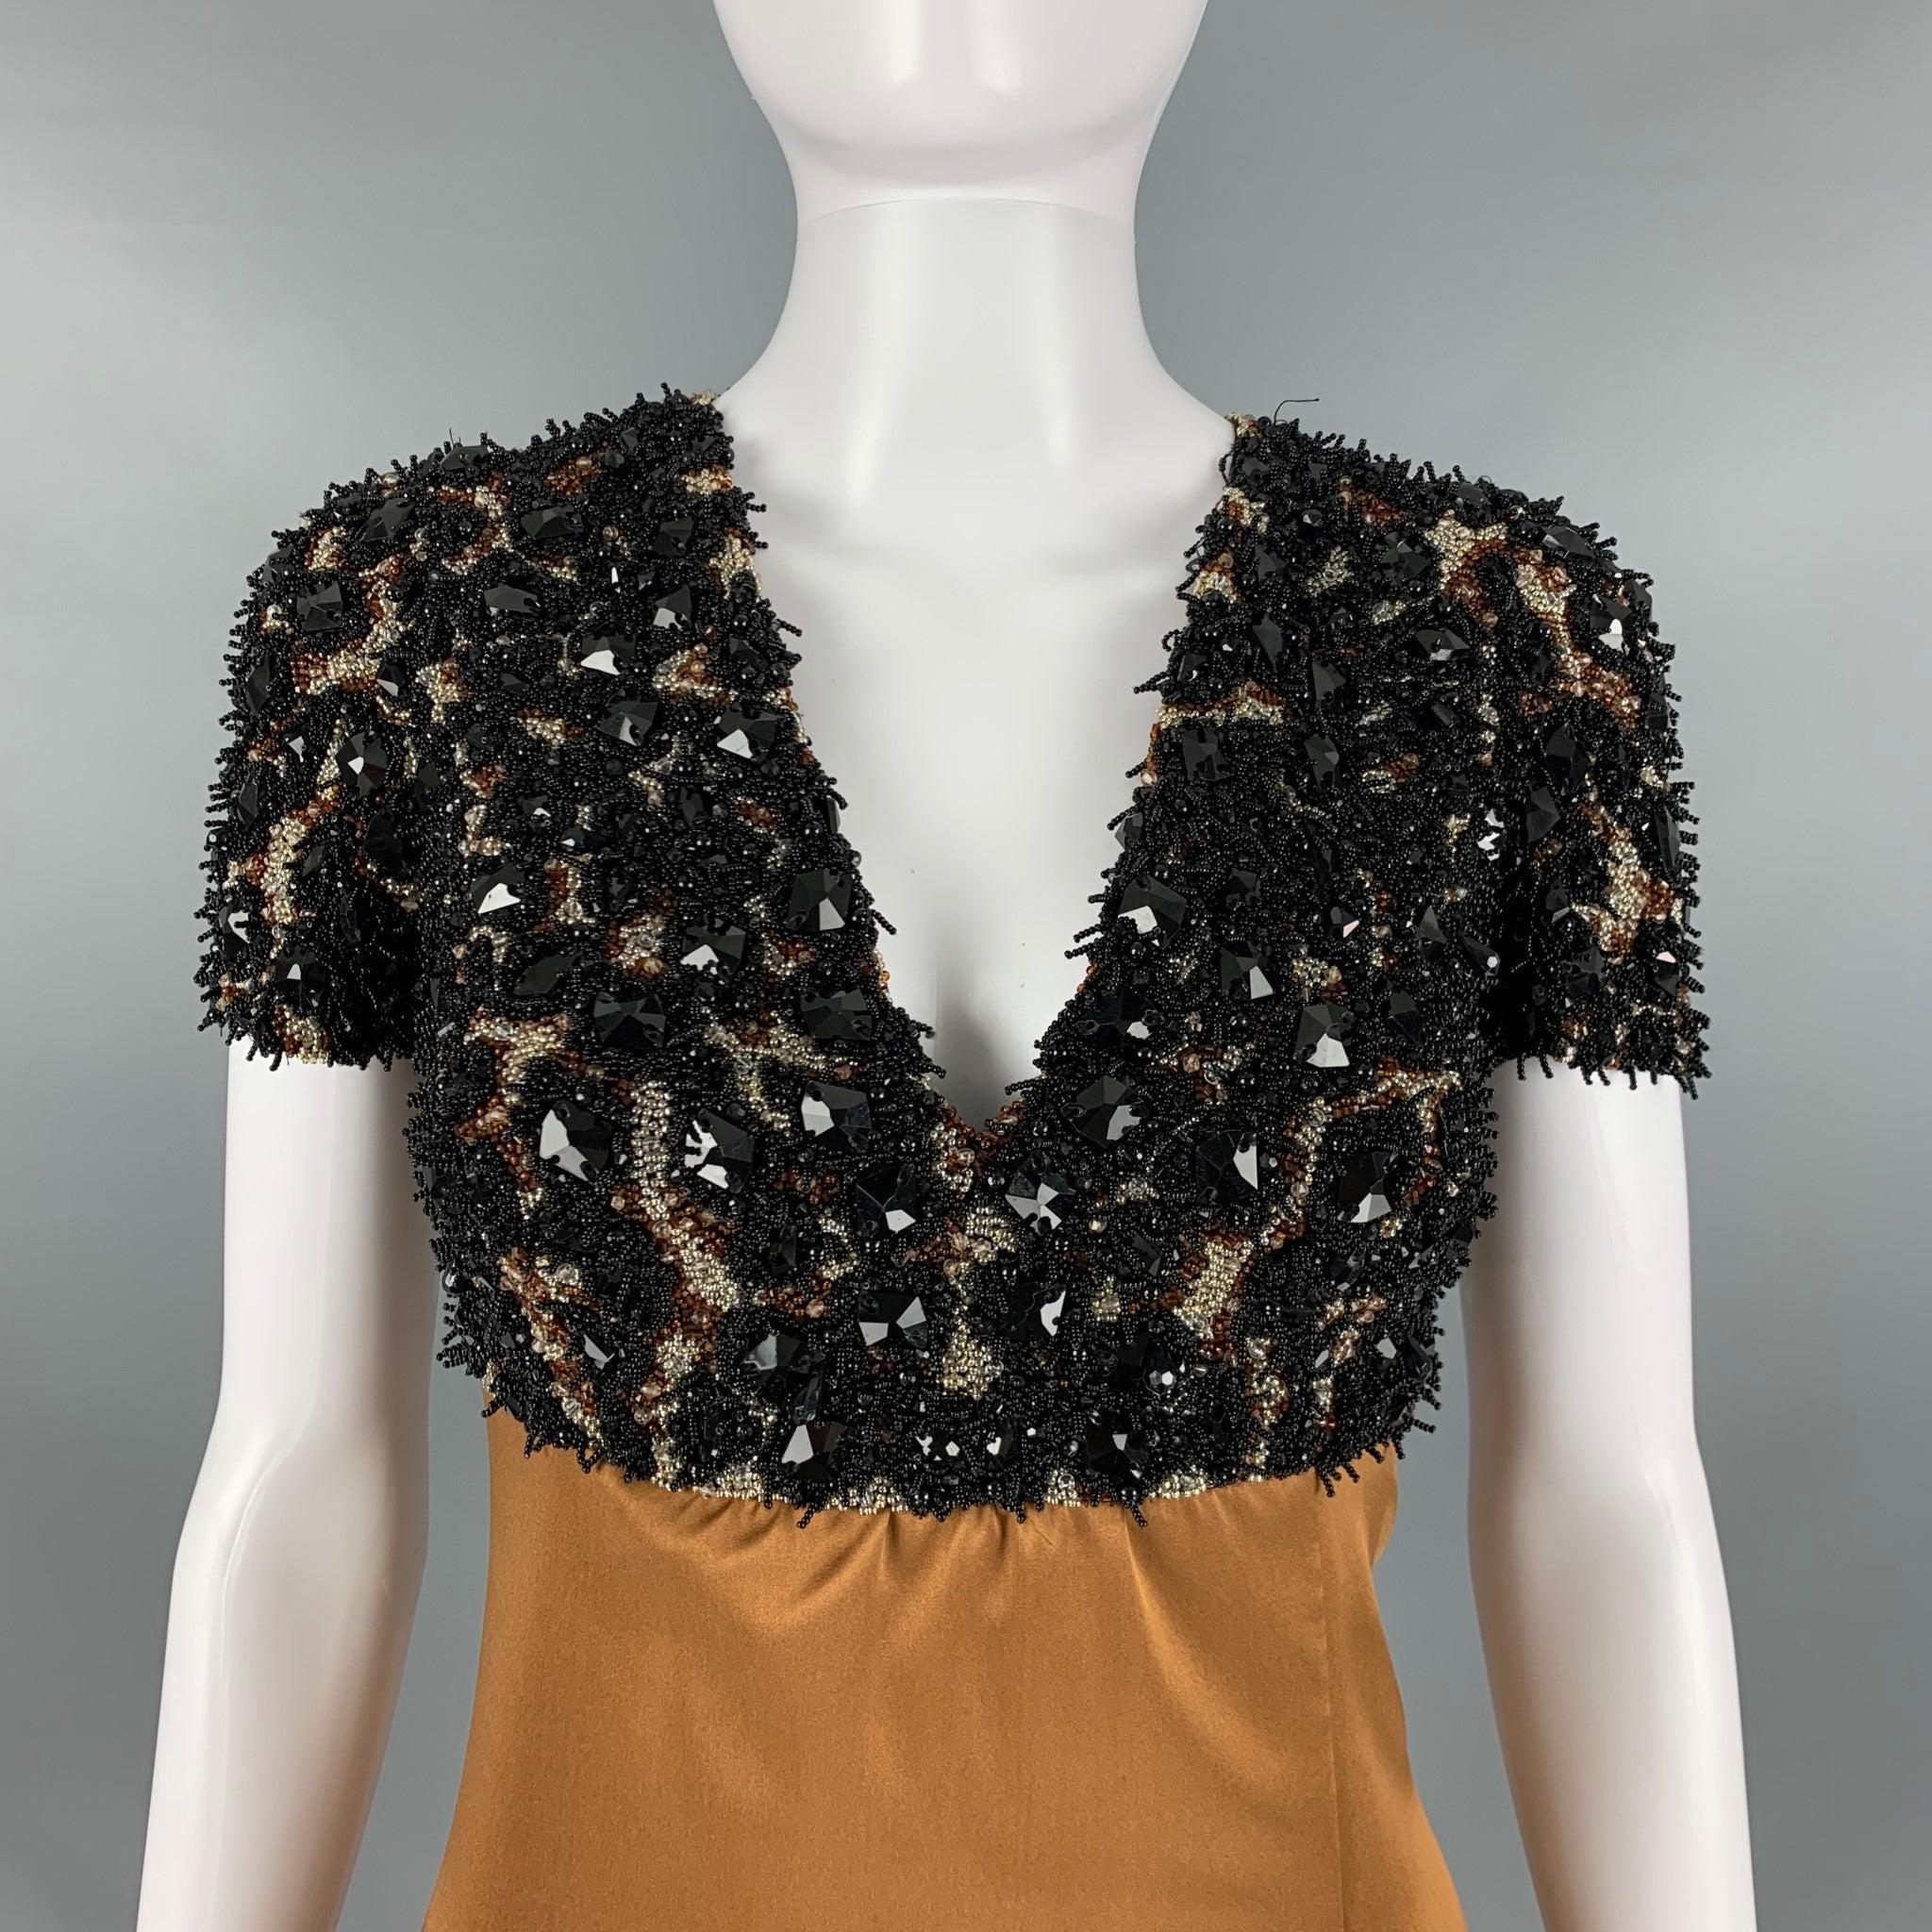 La robe du soir Pre-Fall 2013 de Burberry PRORSUM se présente dans une matière tissée en soie marron camel et présente une silhouette d'impératrice, des accents de perles et de cristaux, une fente sur le devant et une fermeture zippée au dos.